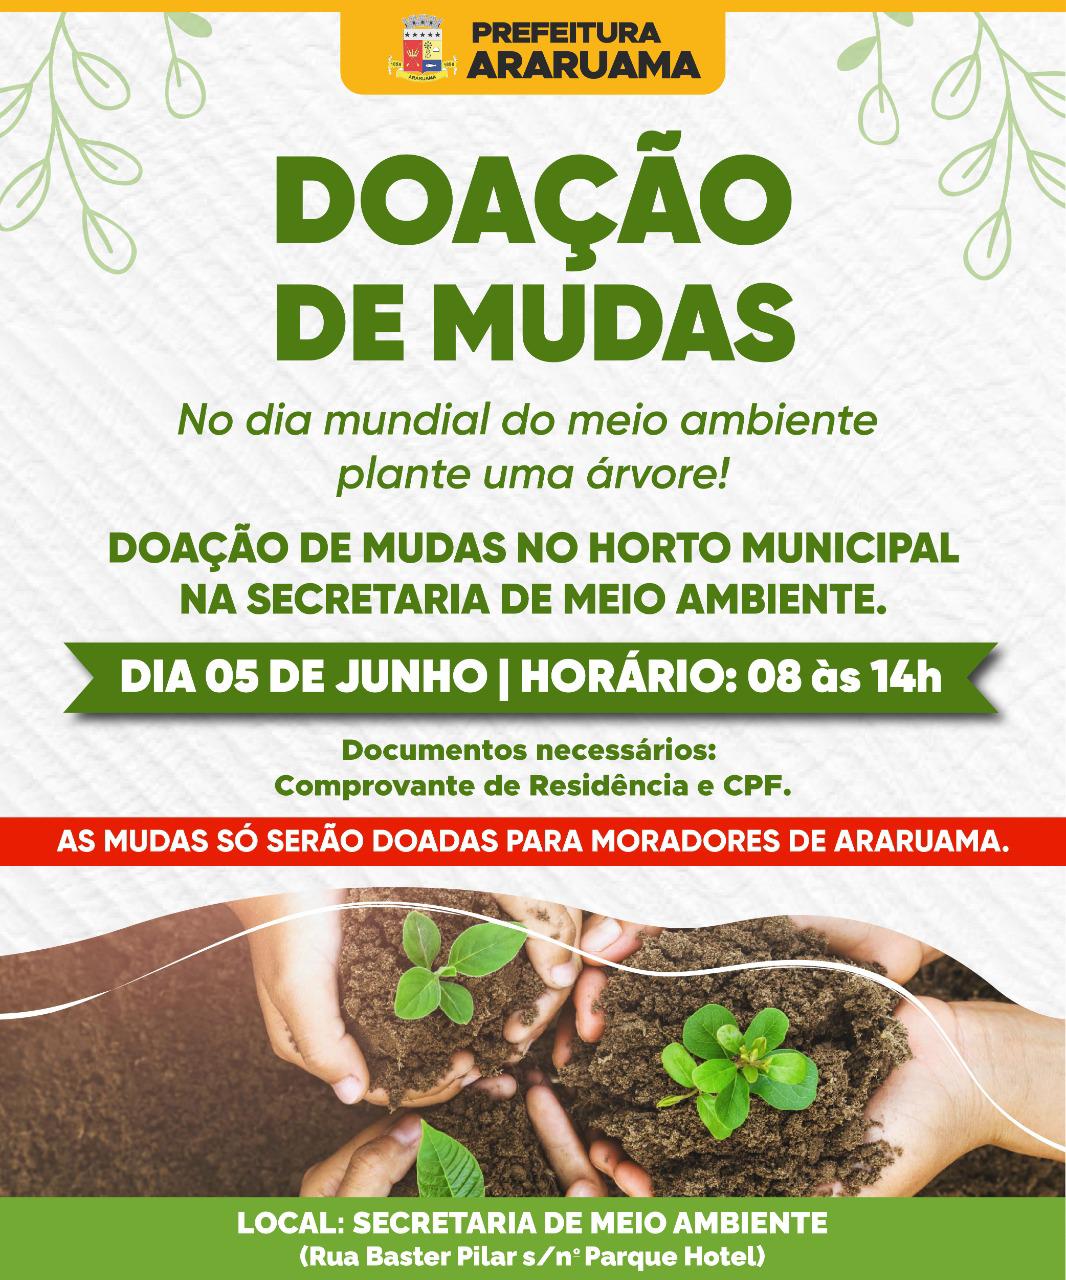 Prefeitura de Araruama comemora Dia Mundial do Meio Ambiente com distribuição de mudas